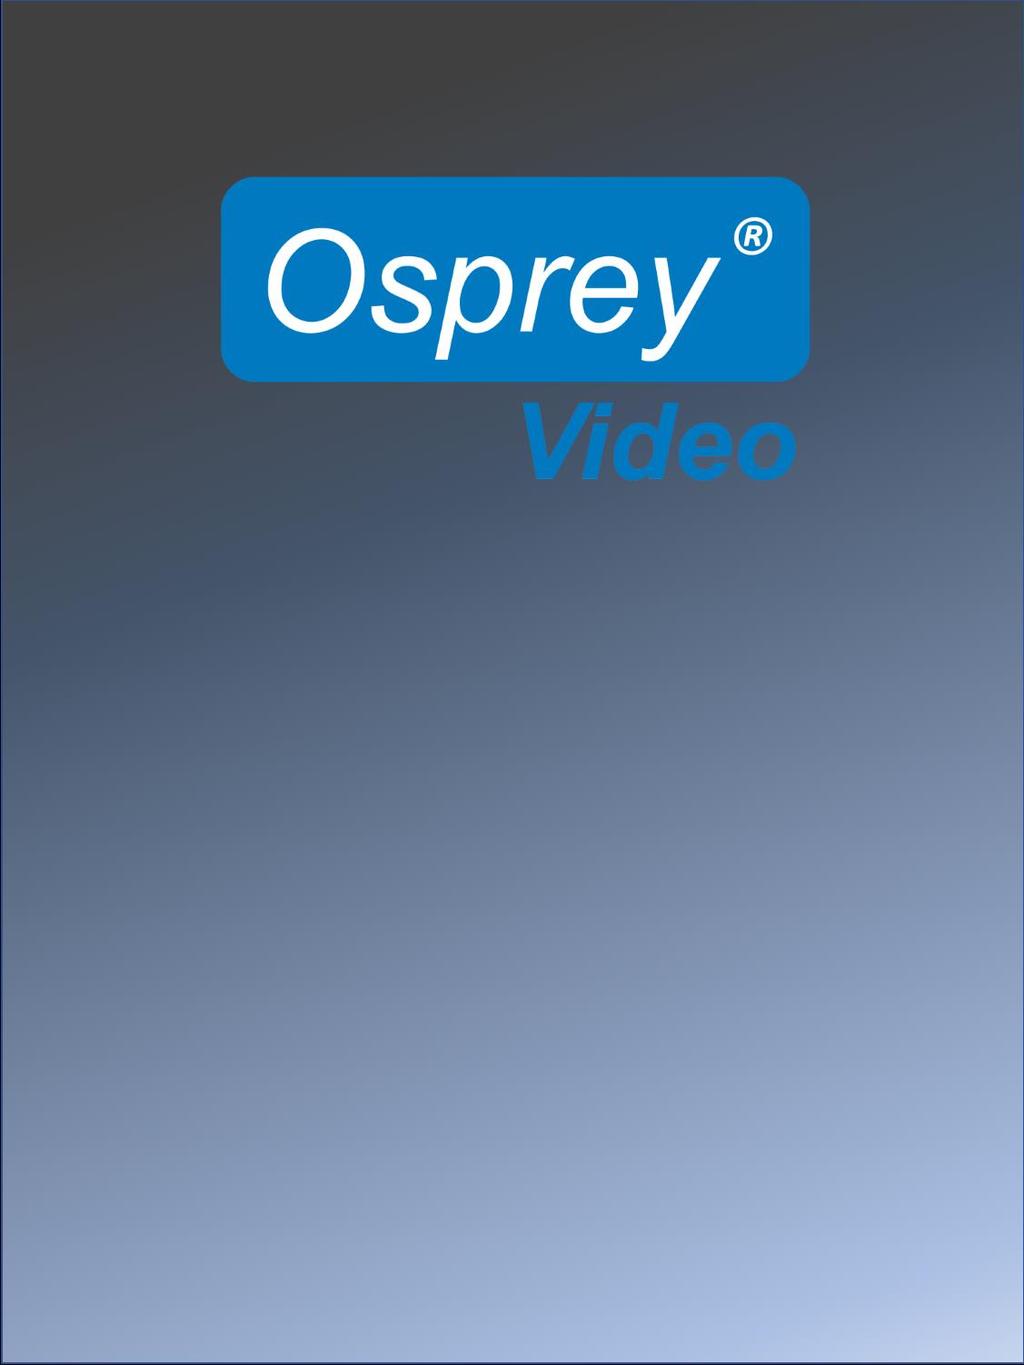 Osprey 800e Series